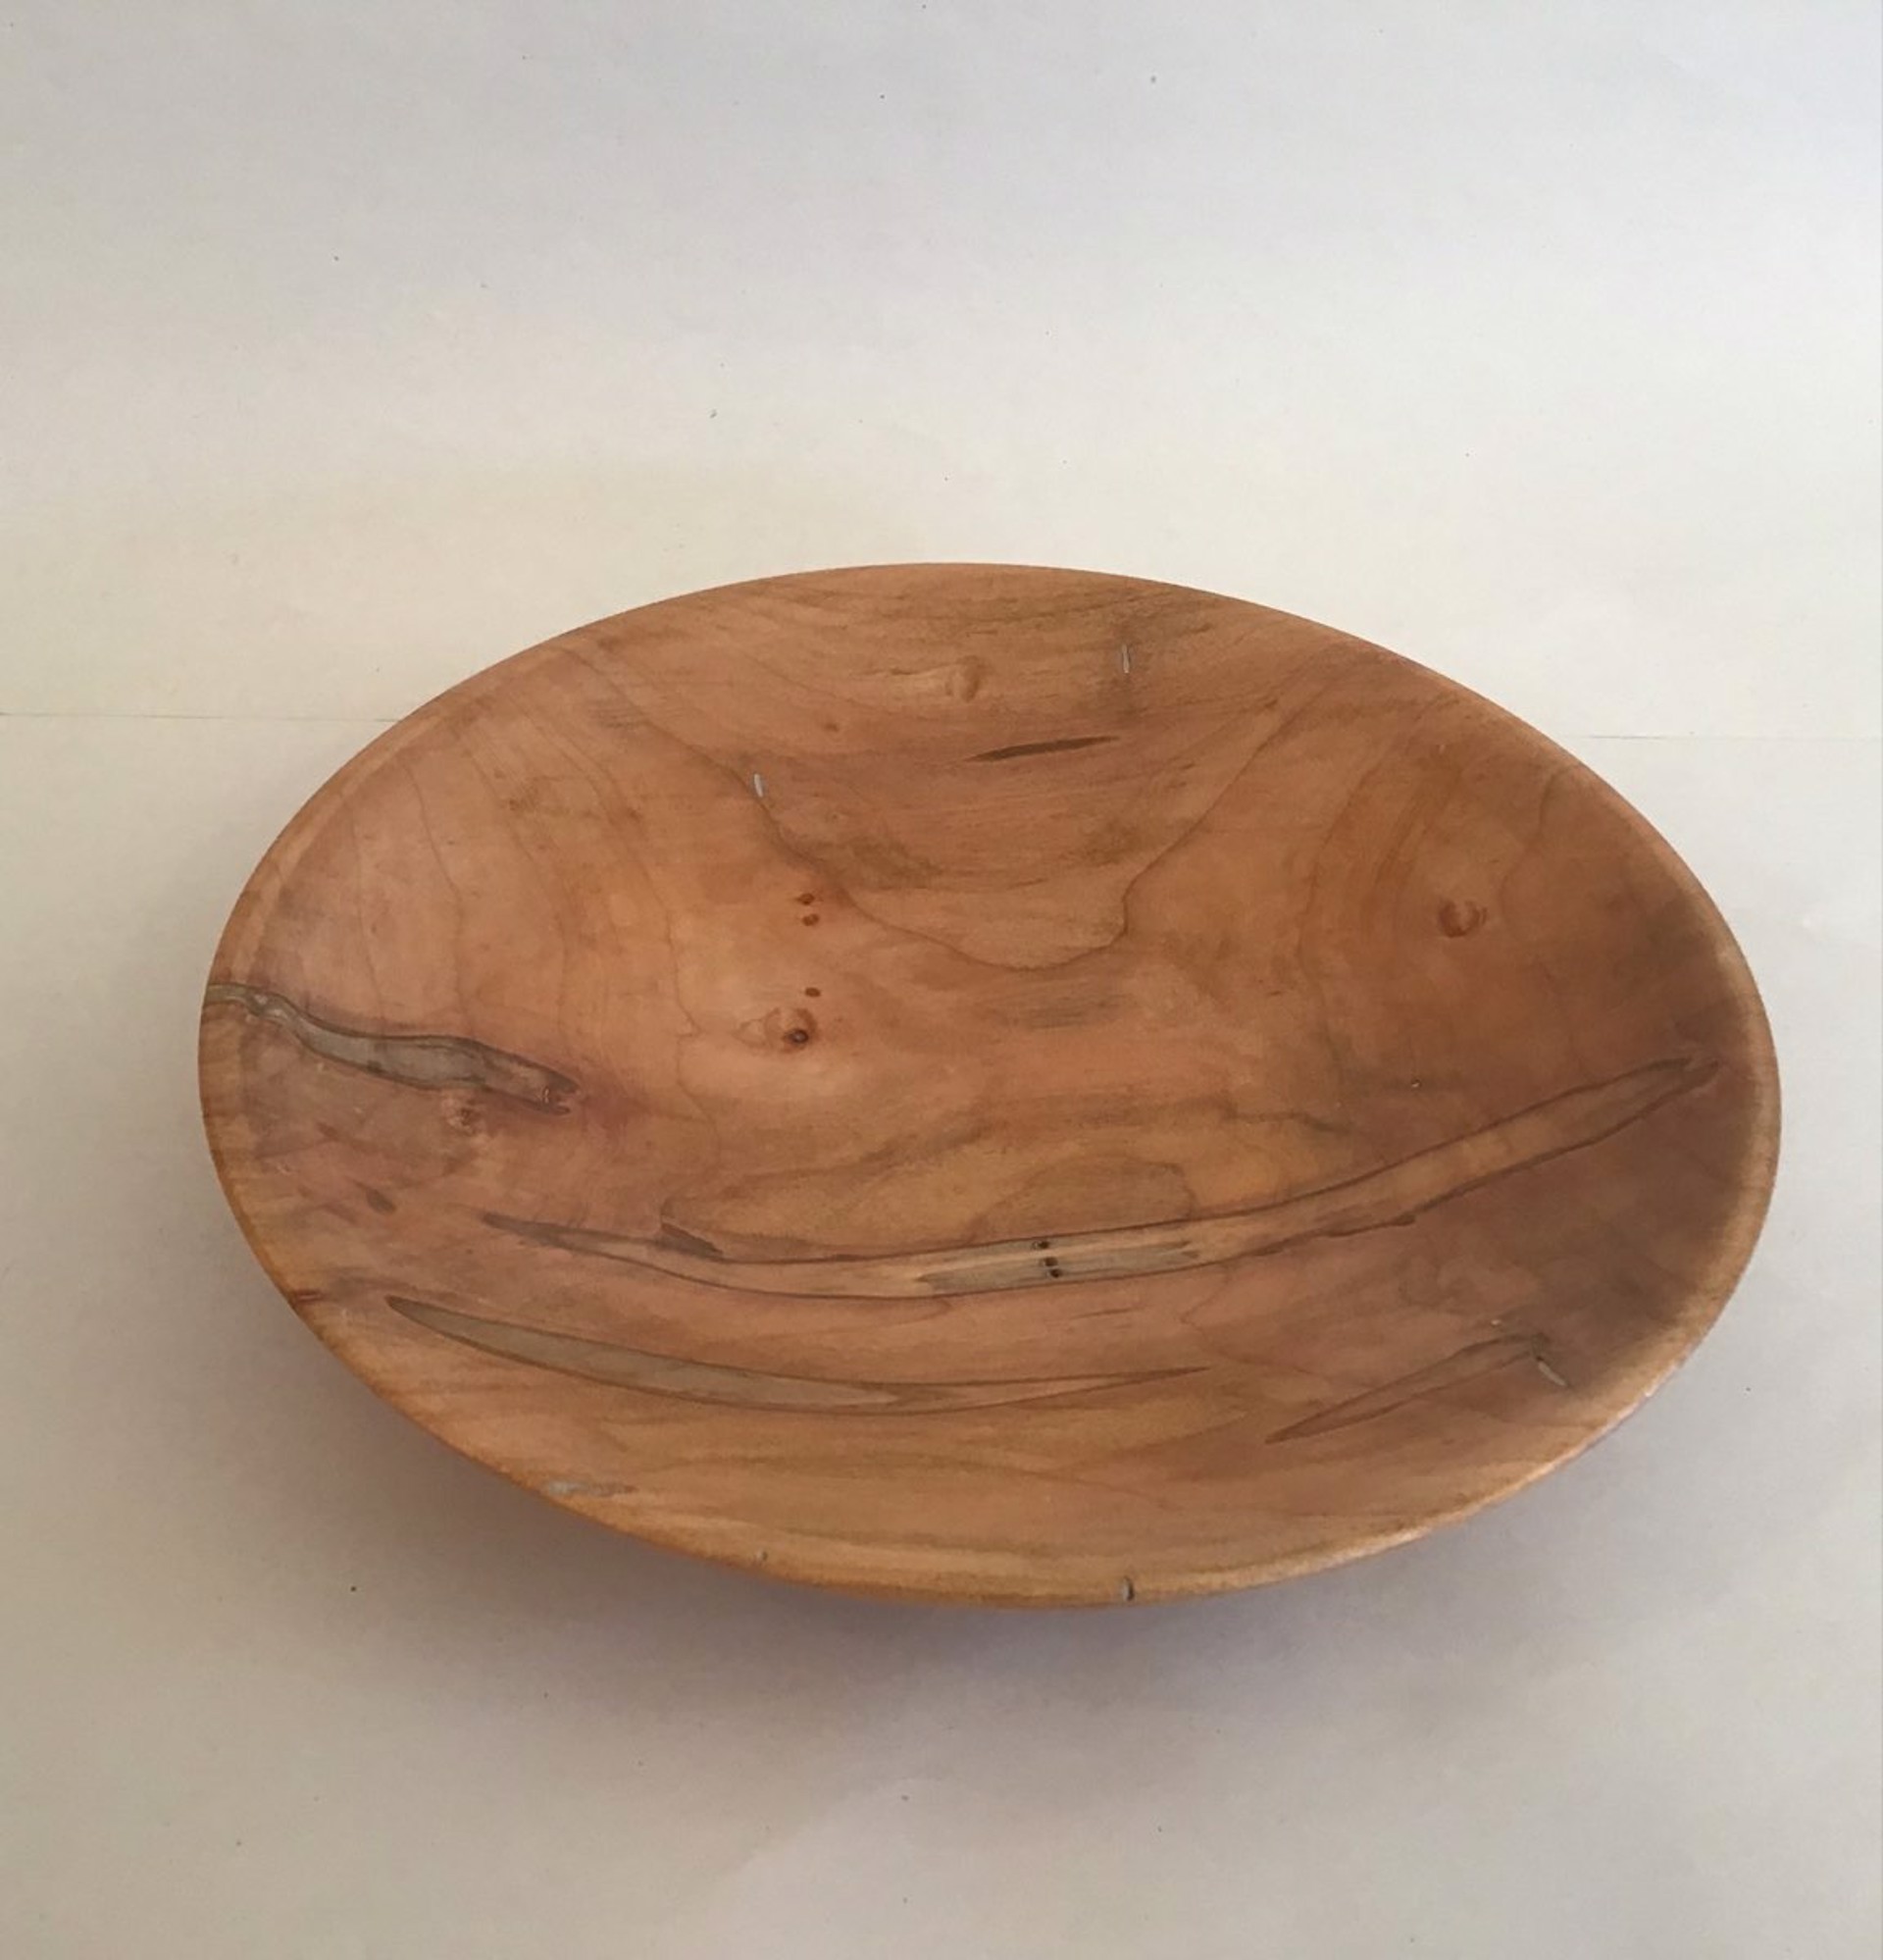 wooden bowl by Bill Jefferson